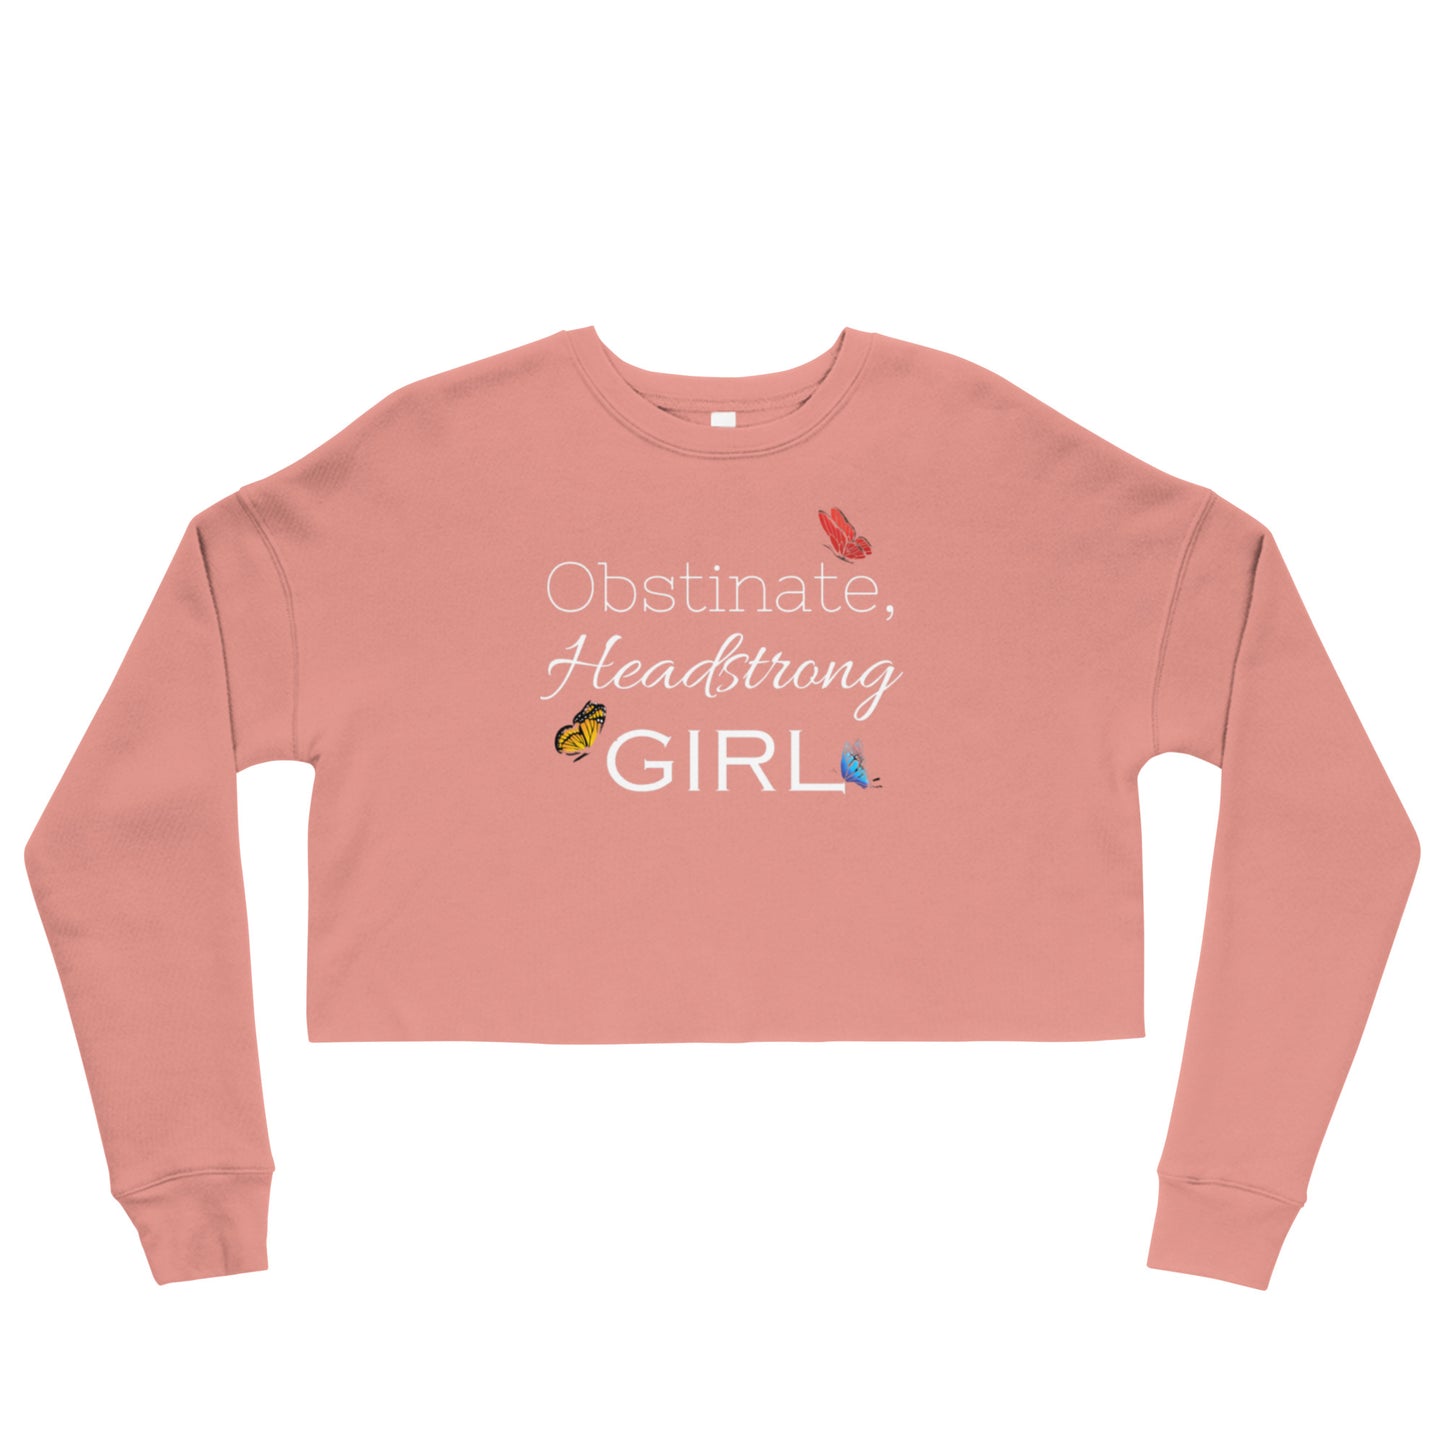 Obstinate, Headstrong Girl Crop Sweatshirt